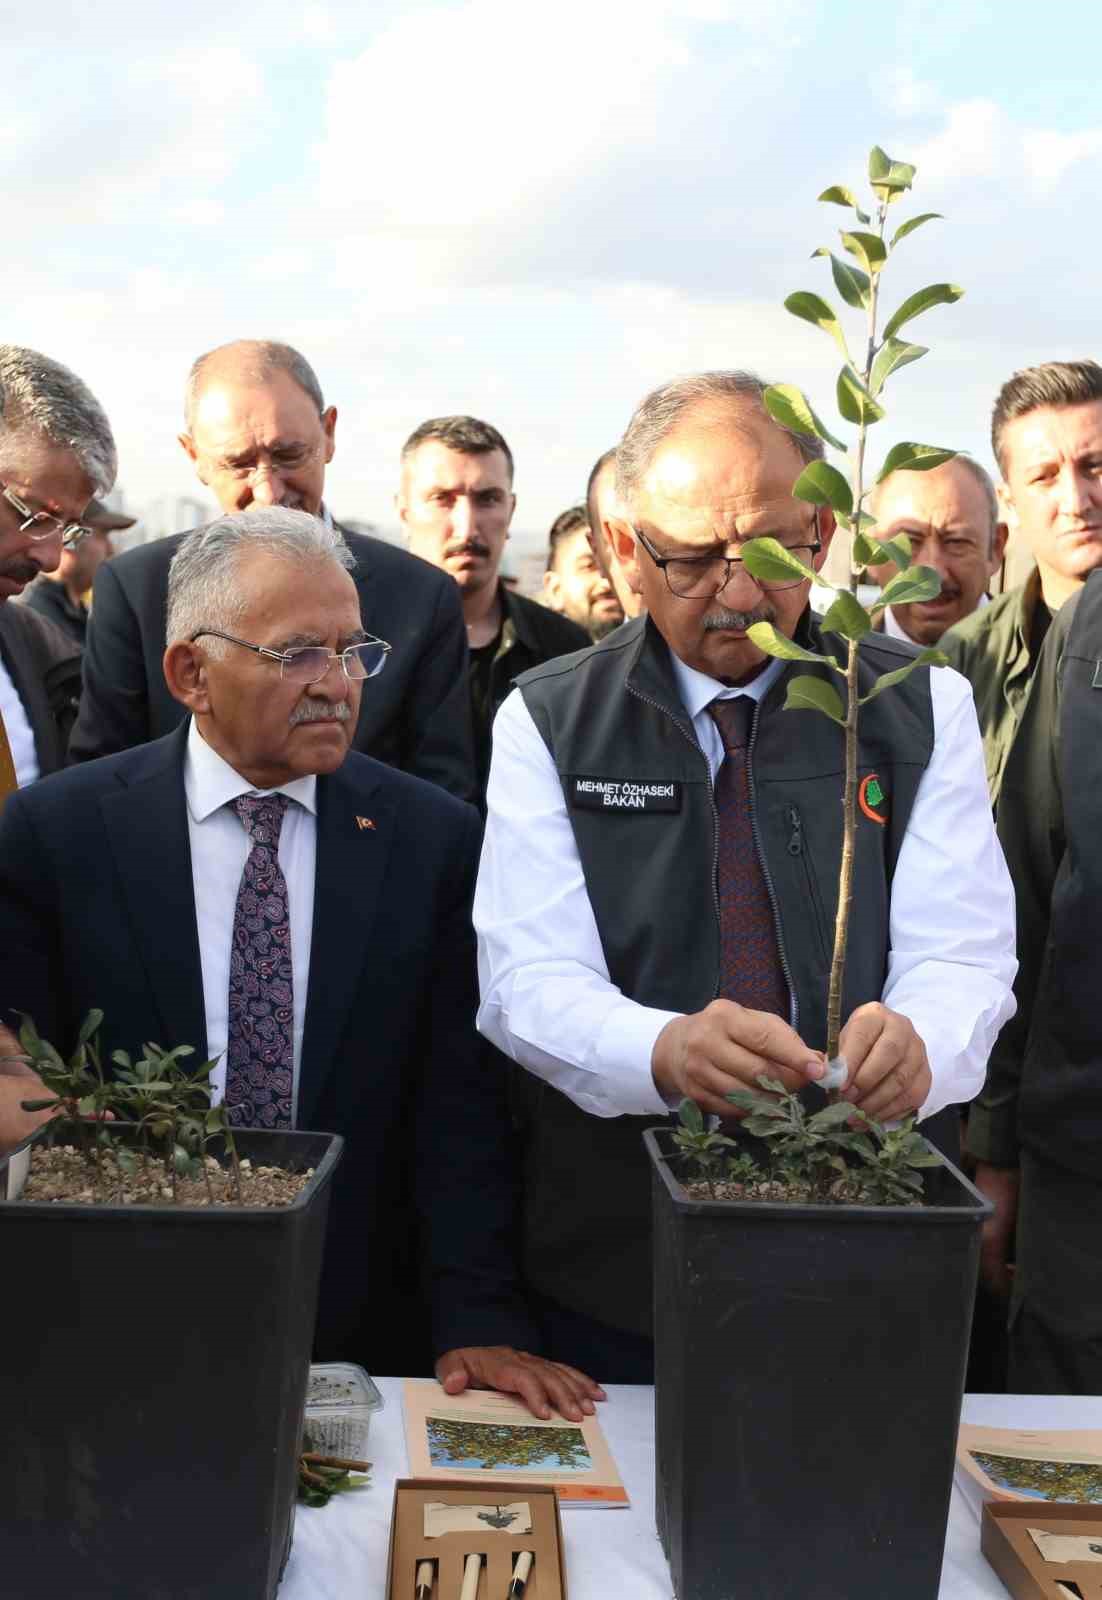 Çevre, Şehircilik ve İklim Değişikliği Bakanlığı ile Büyükşehir Belediyesi’nden Erciyes’te ağaçlandırma töreni
